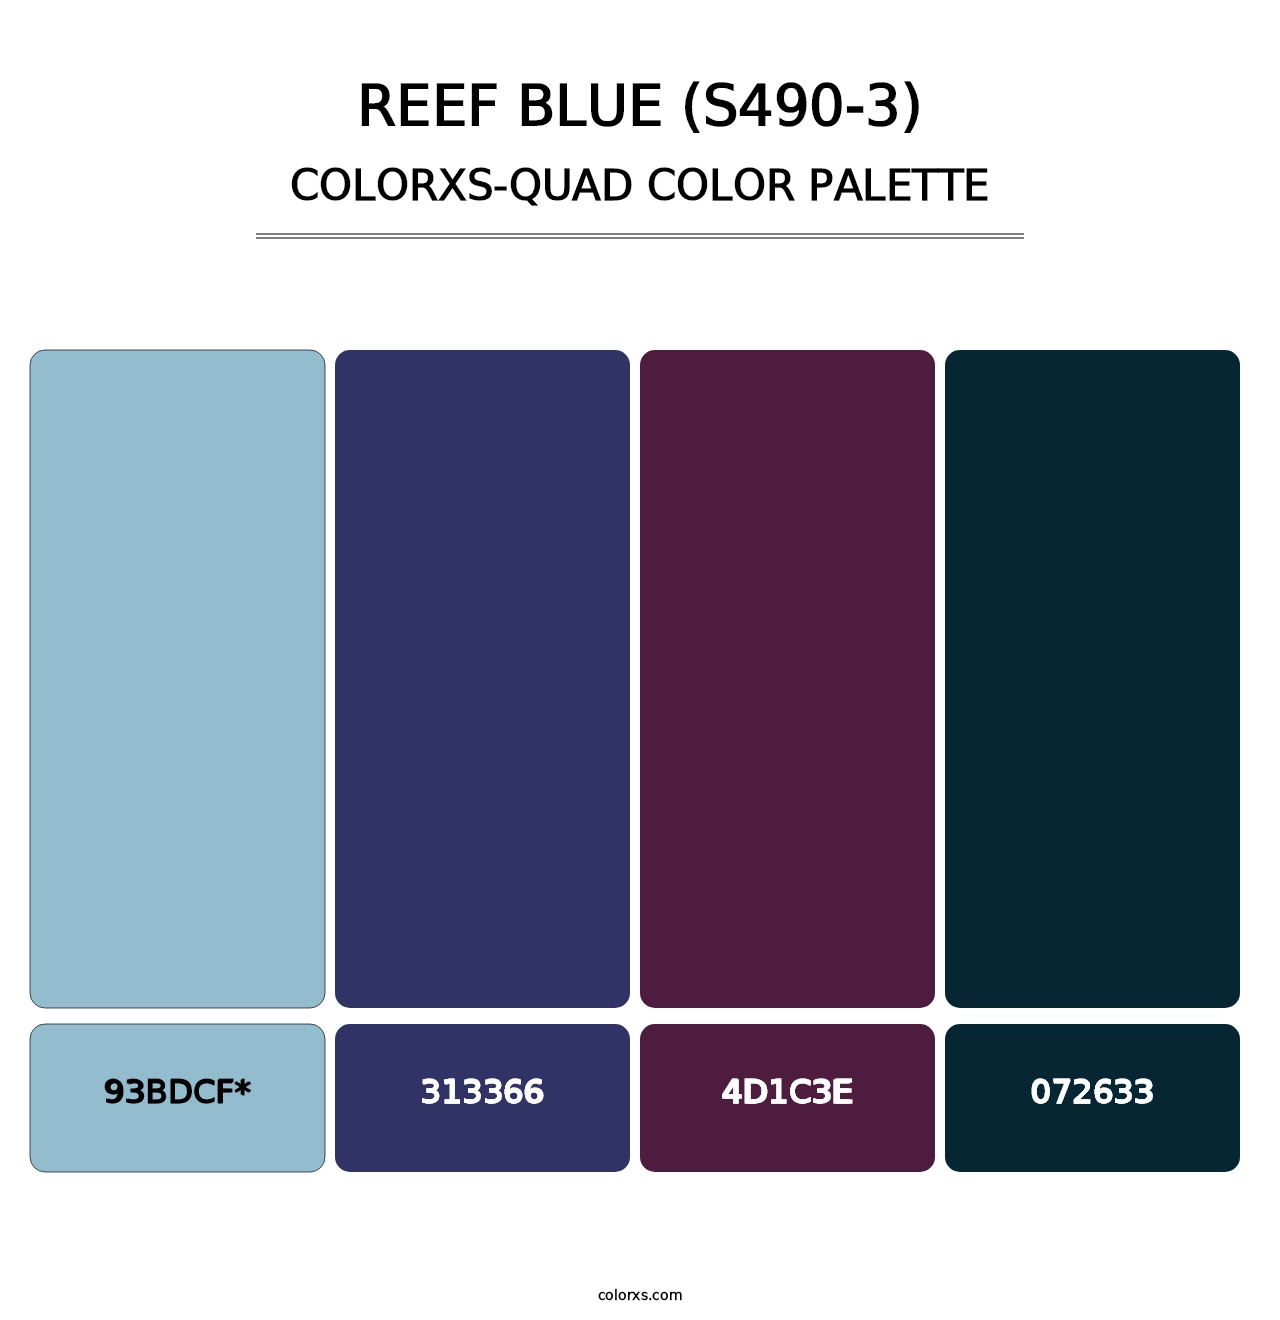 Reef Blue (S490-3) - Colorxs Quad Palette